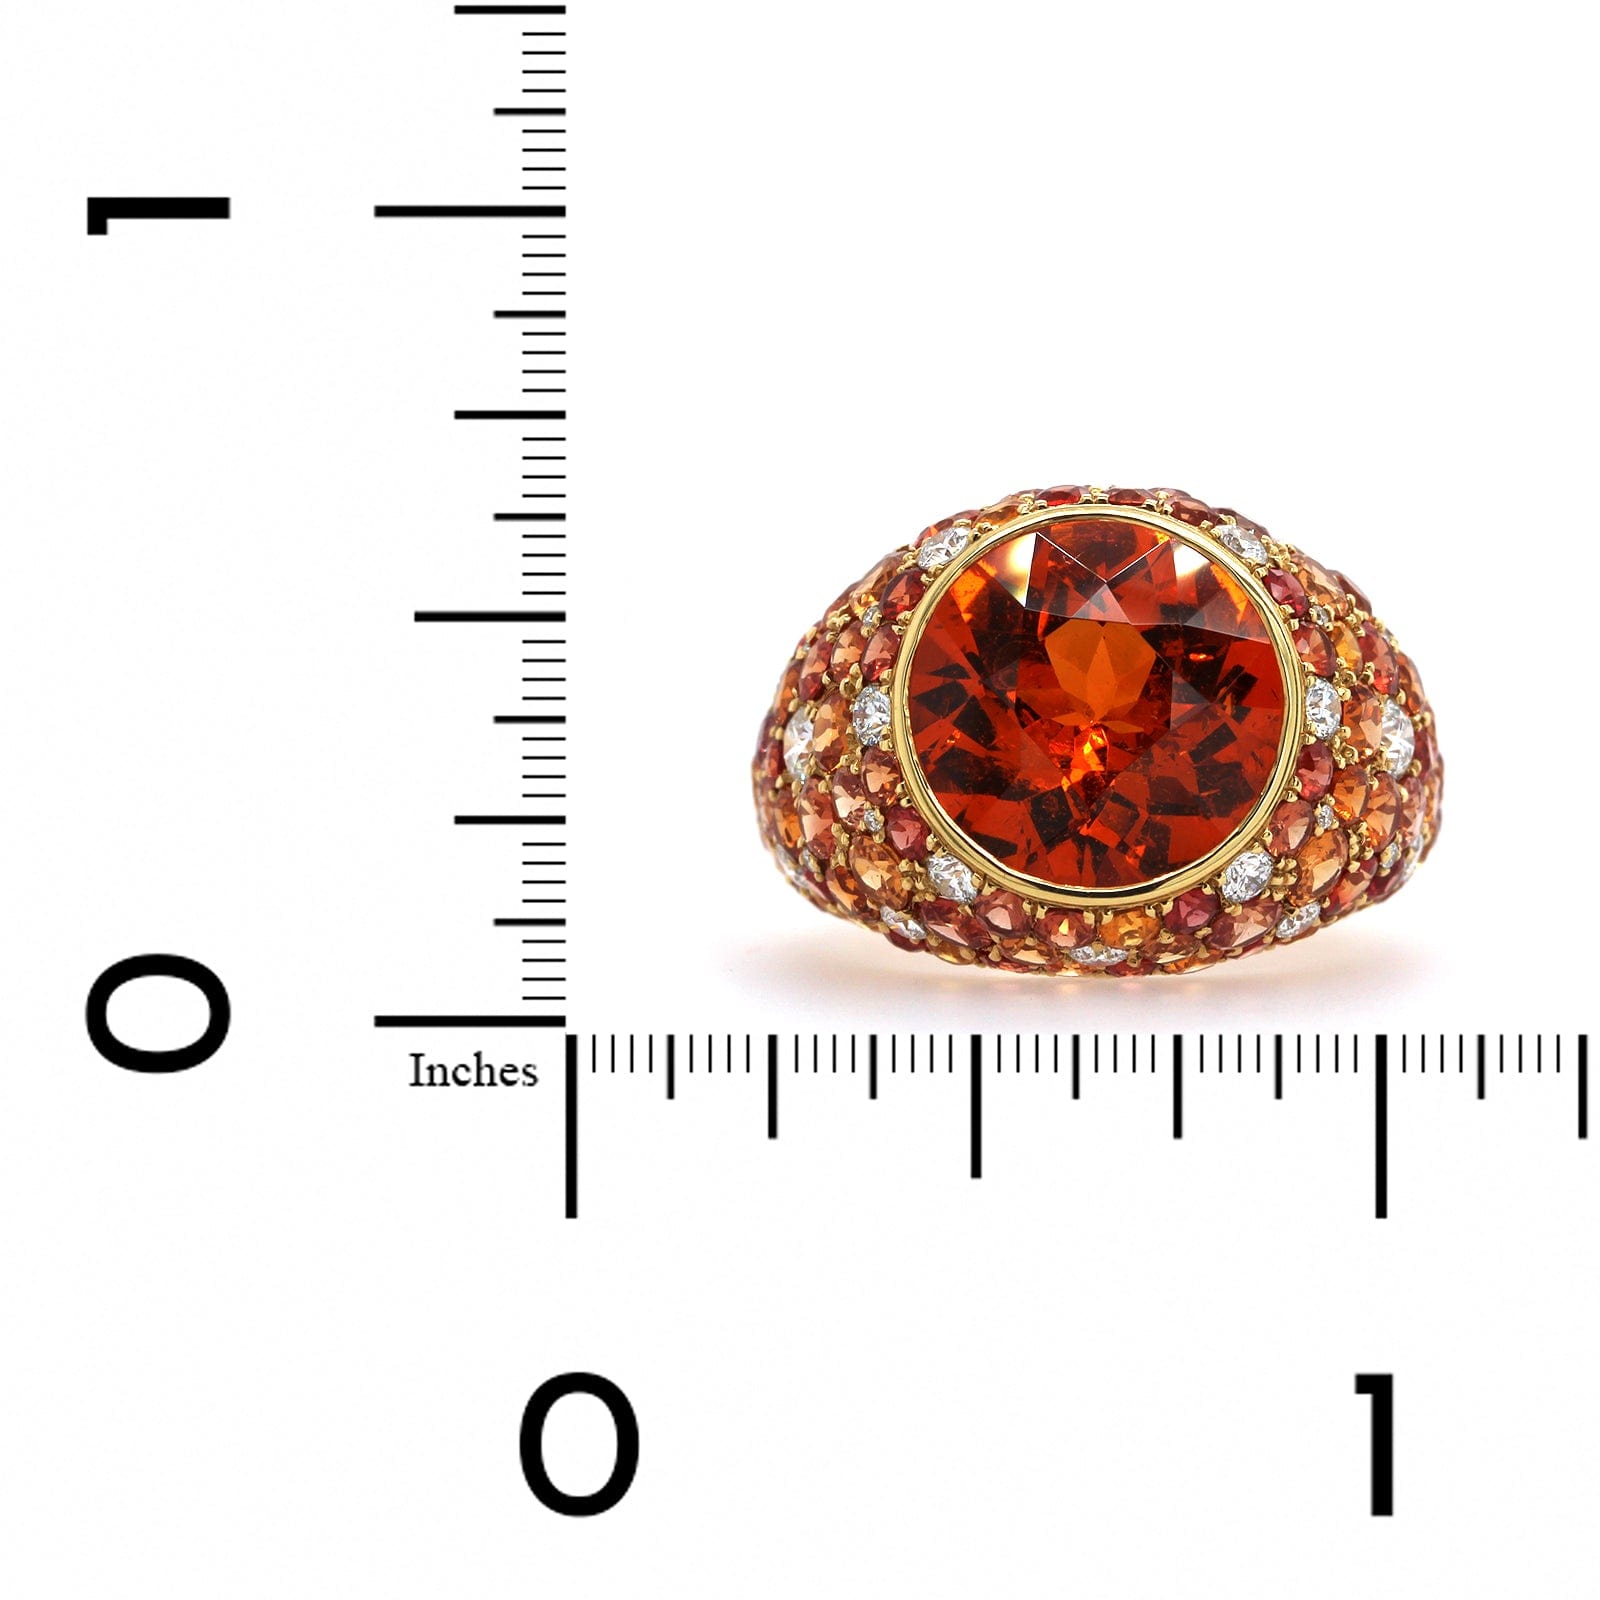 18K Yellow Gold Round Mandarin Garnet and Sapphire Ring